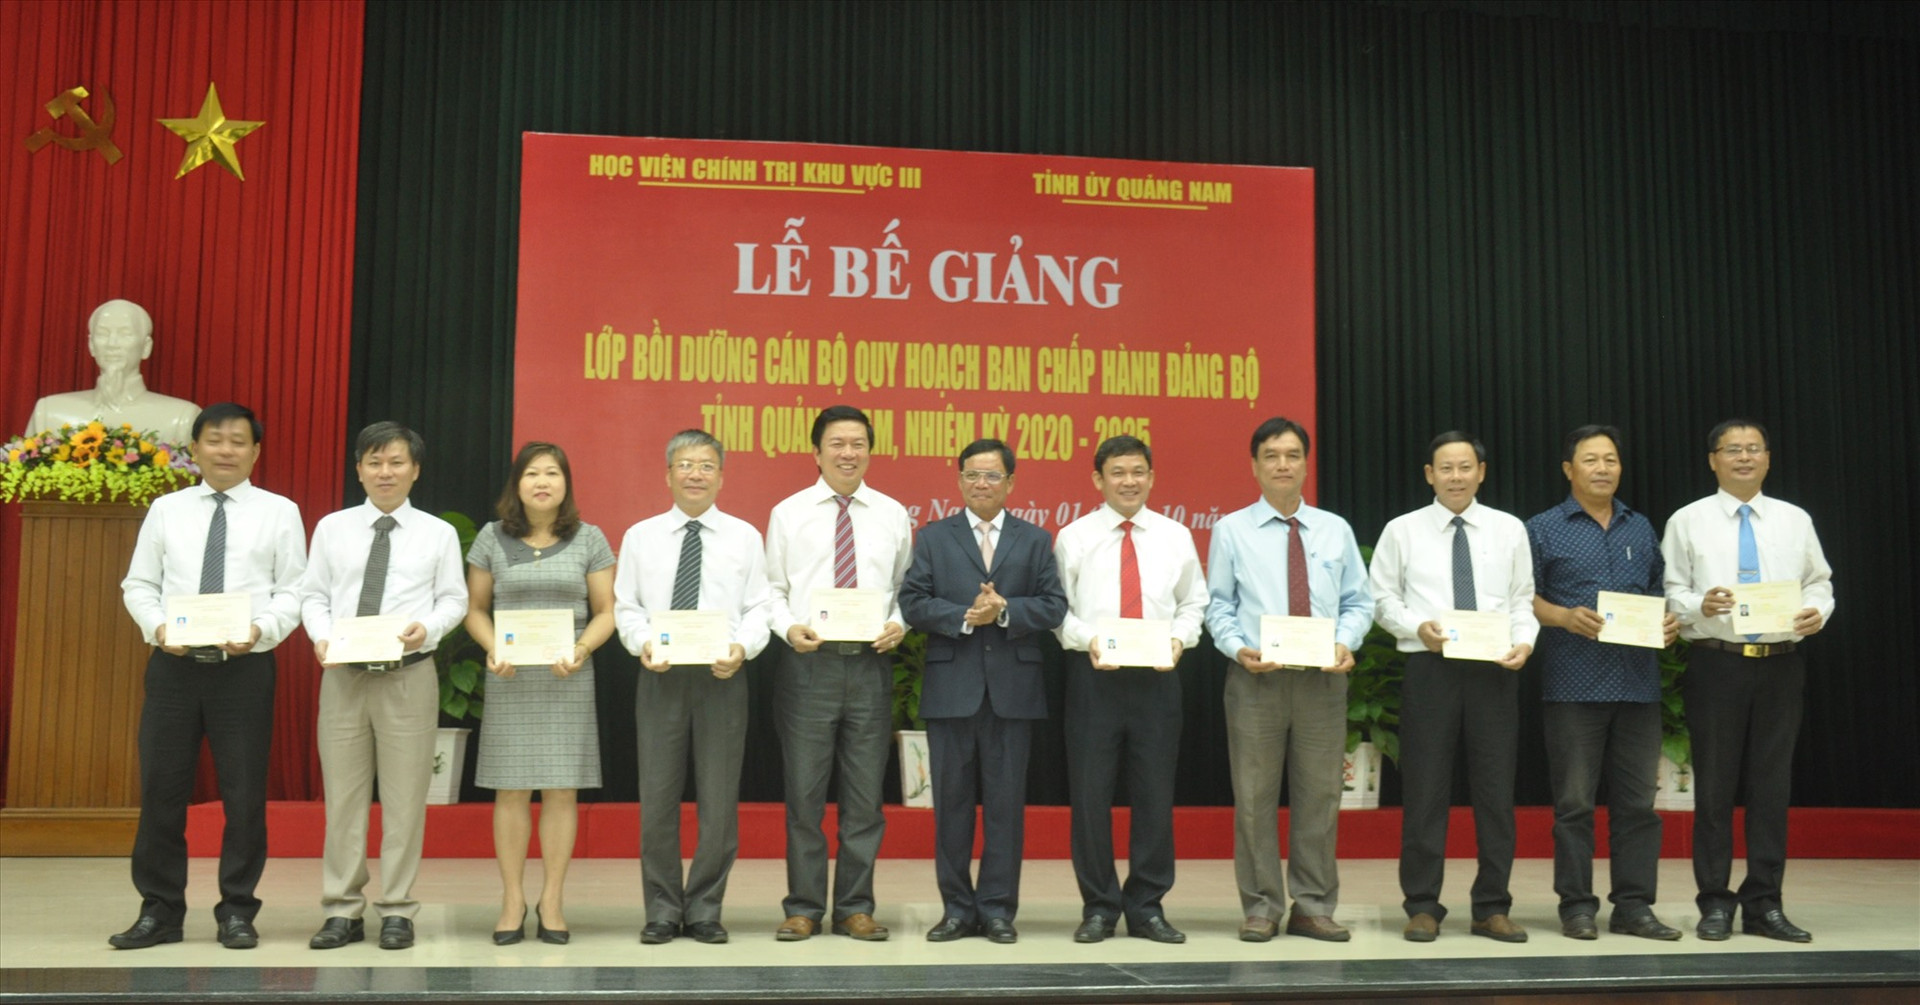 Lãnh đạo Học viện Chính trị khu vực III Đà Nẵng trao chứng nhận cho học viên hoàn thành khóa bồi dưỡng cán bộ quy hoạch Ban Chấp hành Đảng bộ tỉnh nhiệm kỳ 2020 - 2025. Ảnh: N.Đ